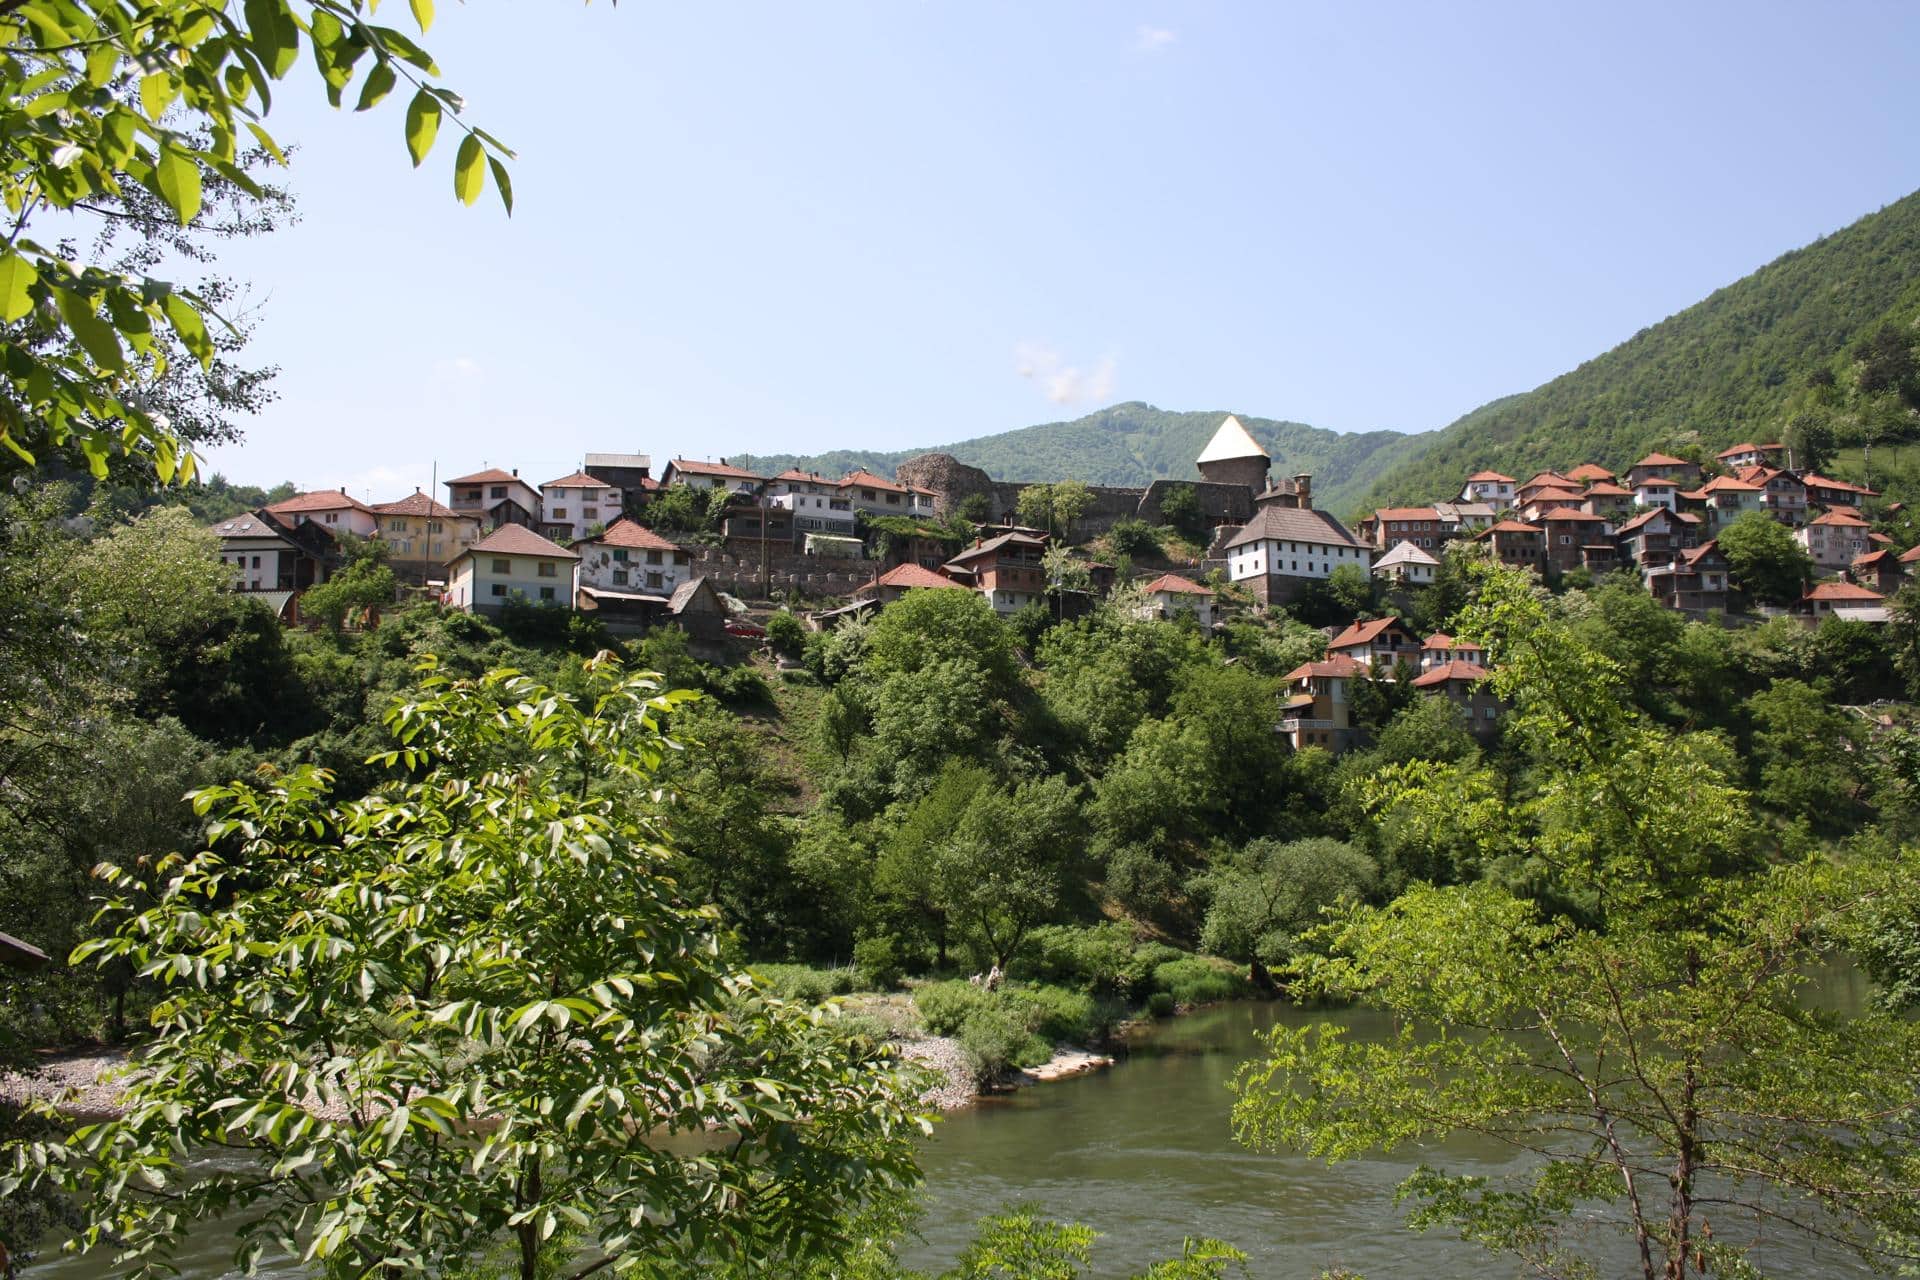 Srednjovjekovno selo Vranduk u blizini Zenice na obali rijeke Bosne, nedaleko od Bilinog polja